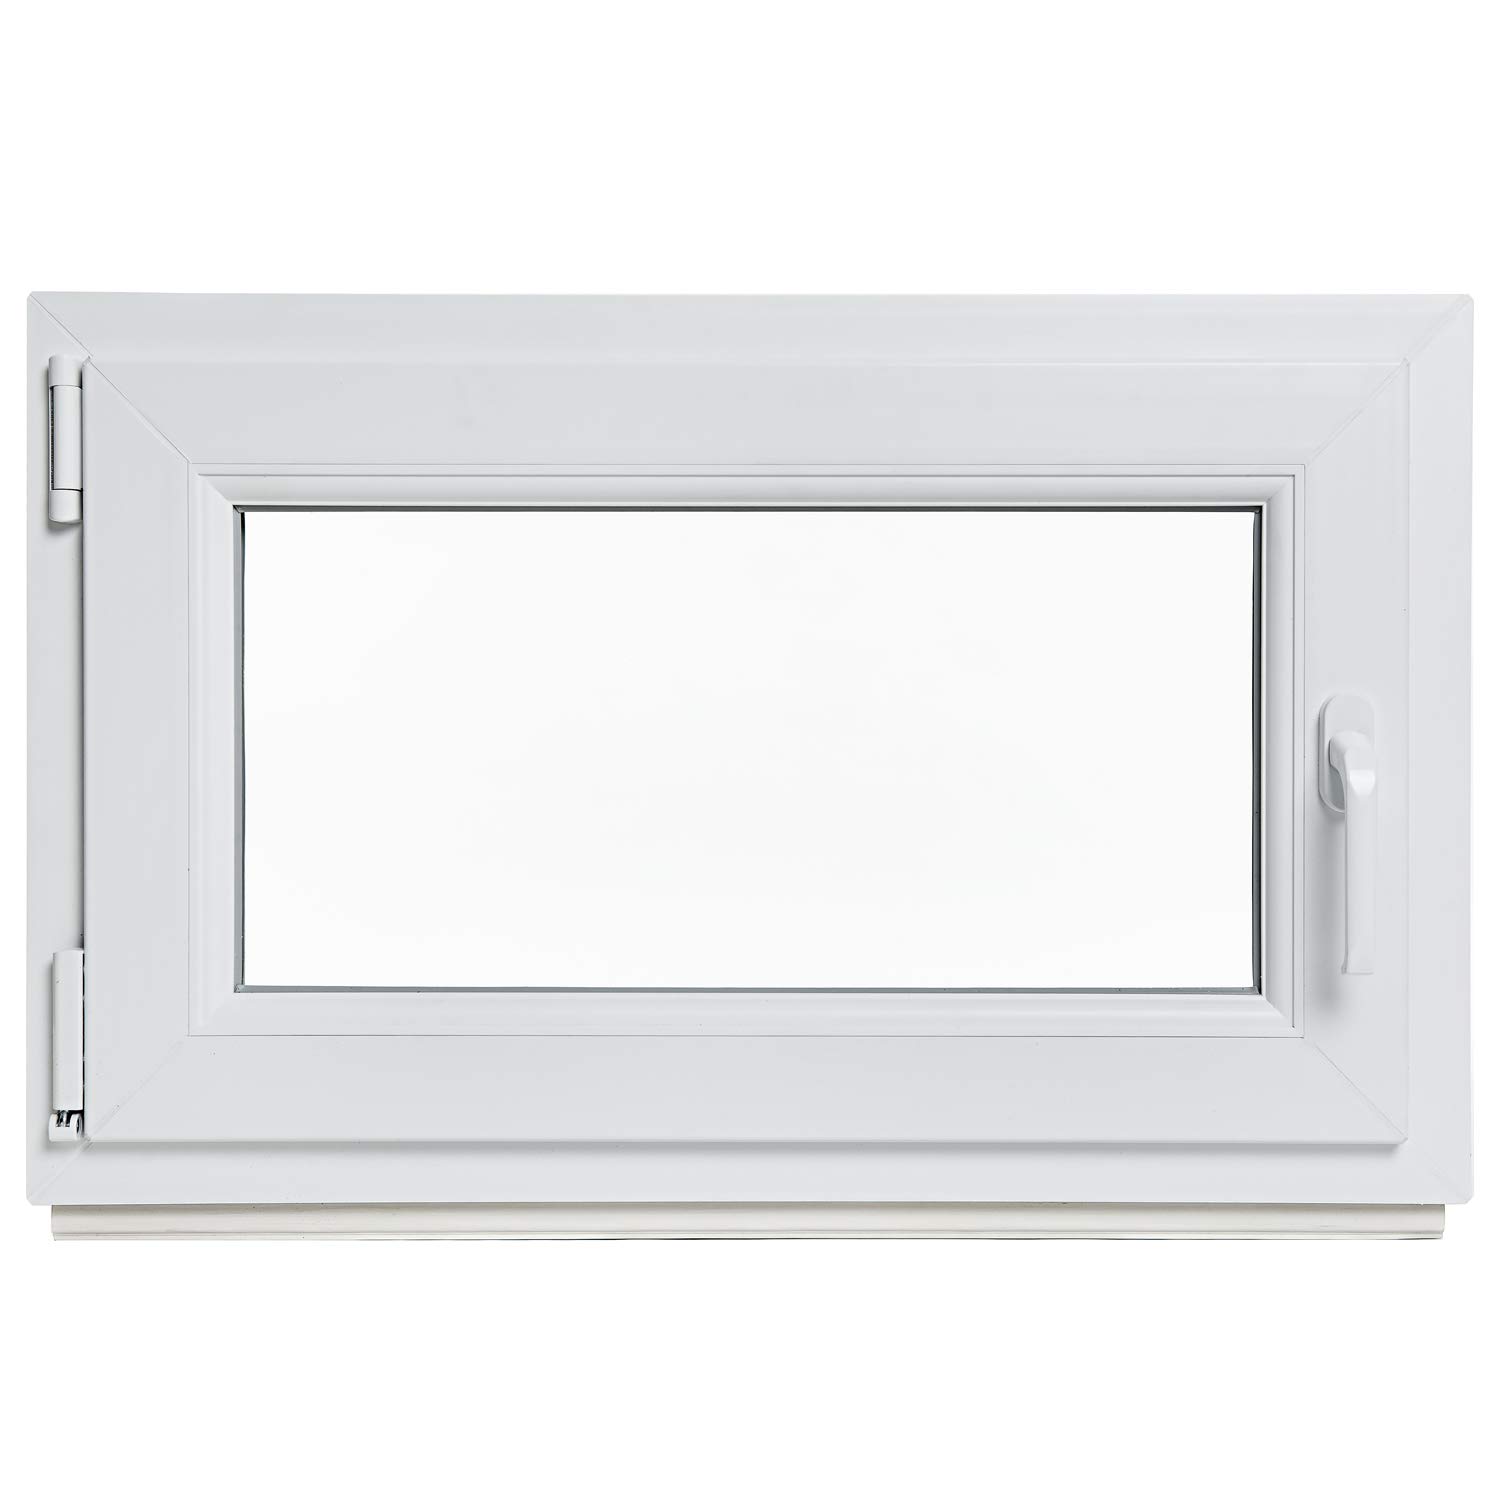 Kellerfenster - Kunststoff - Fenster - weiß - BxH: 60 x 80 cm - DIN links - 3-fach-Verglasung - Lagerware